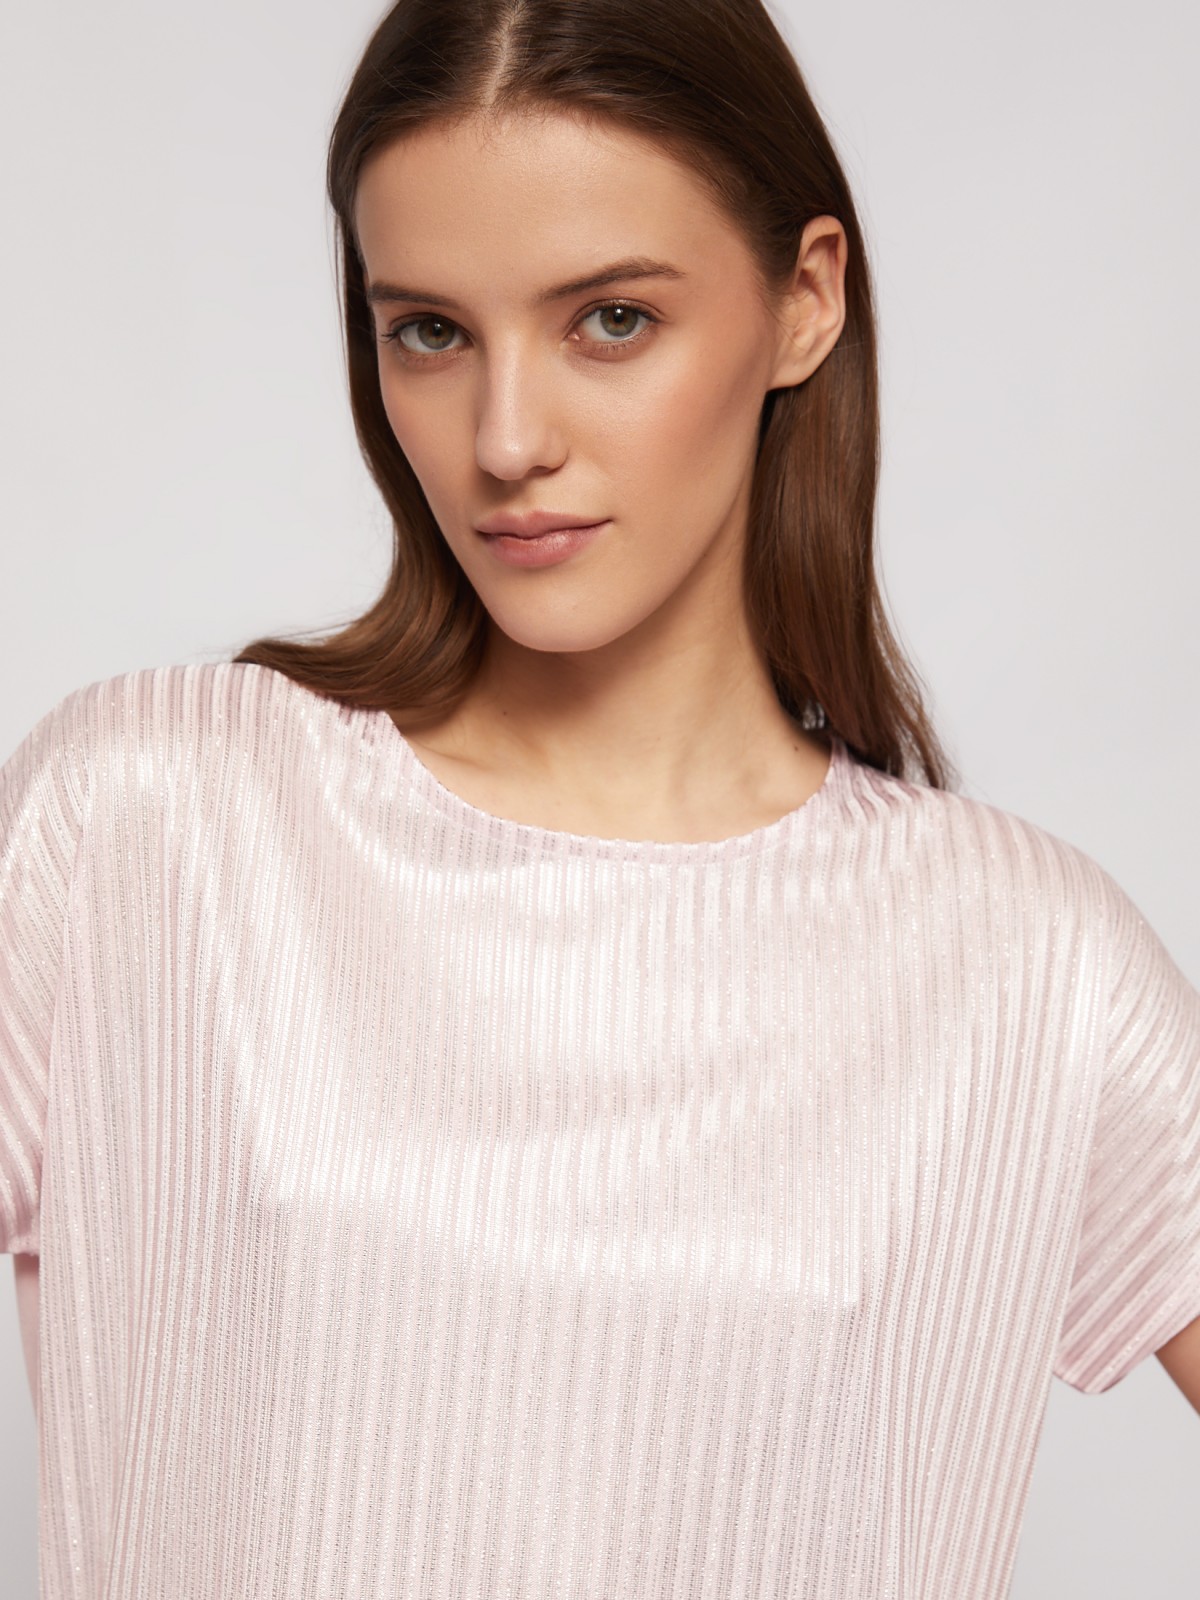 Трикотажный комбинированный топ-блузка с блеском zolla 024223226033, цвет розовый, размер XS - фото 3